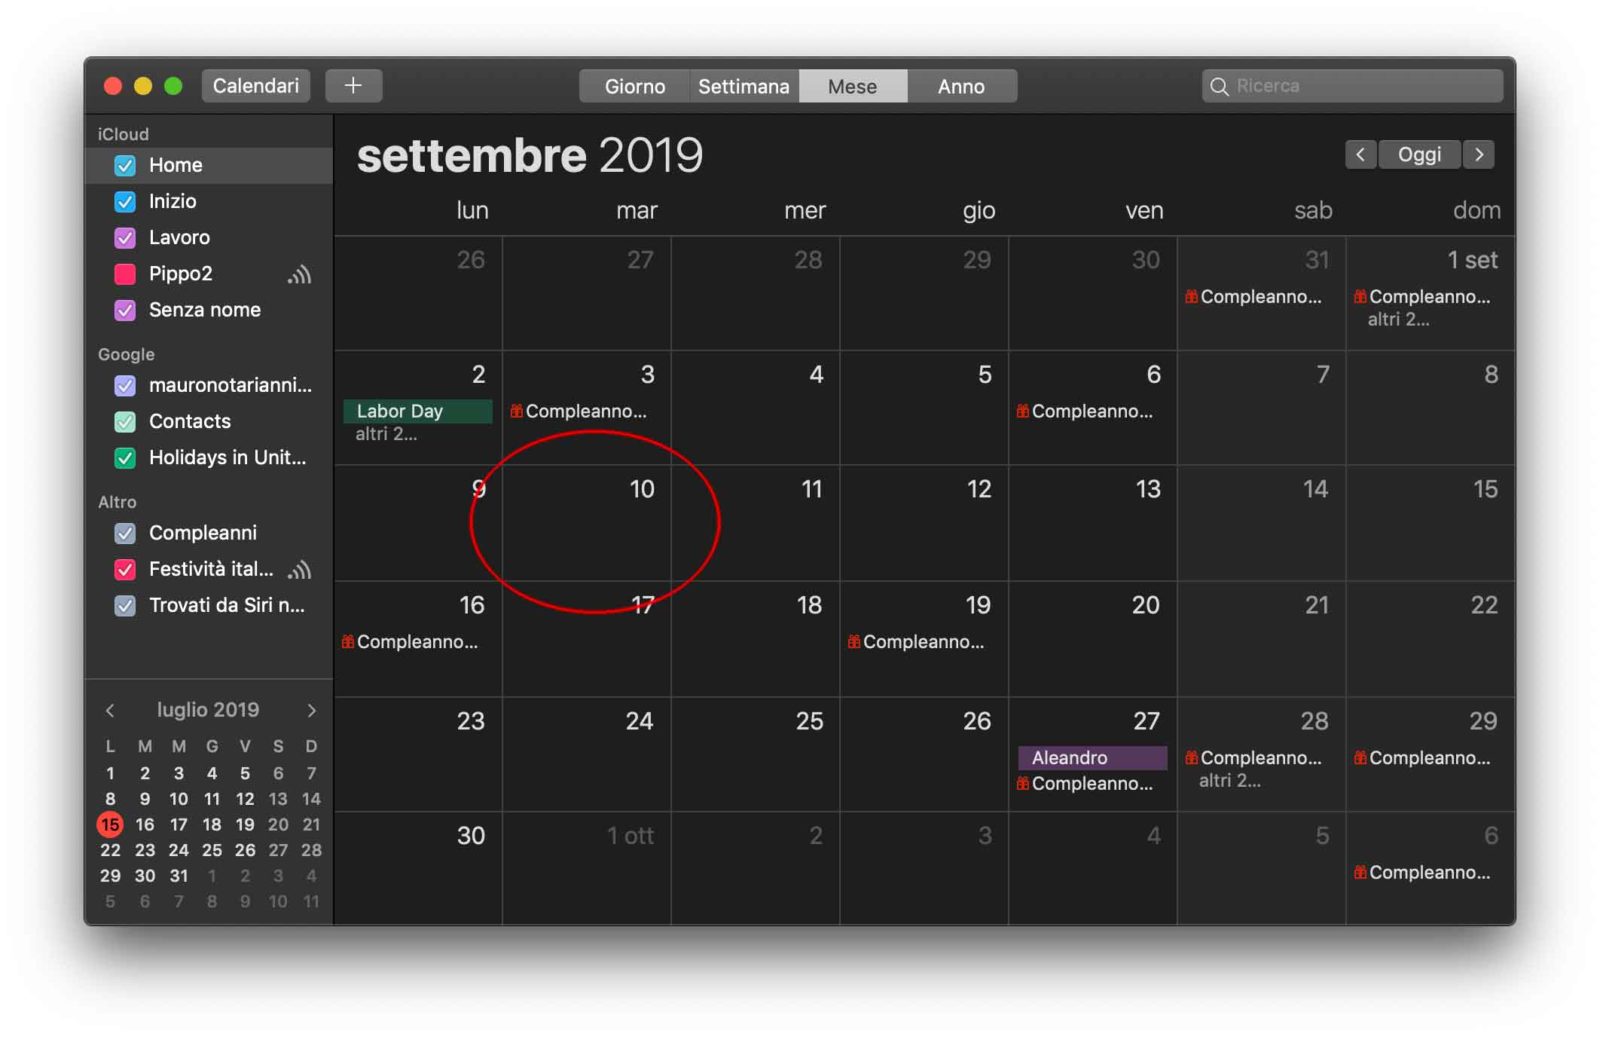 Evento presentazione nuovi iPhone 2019: 10 settembre la data più probabile?